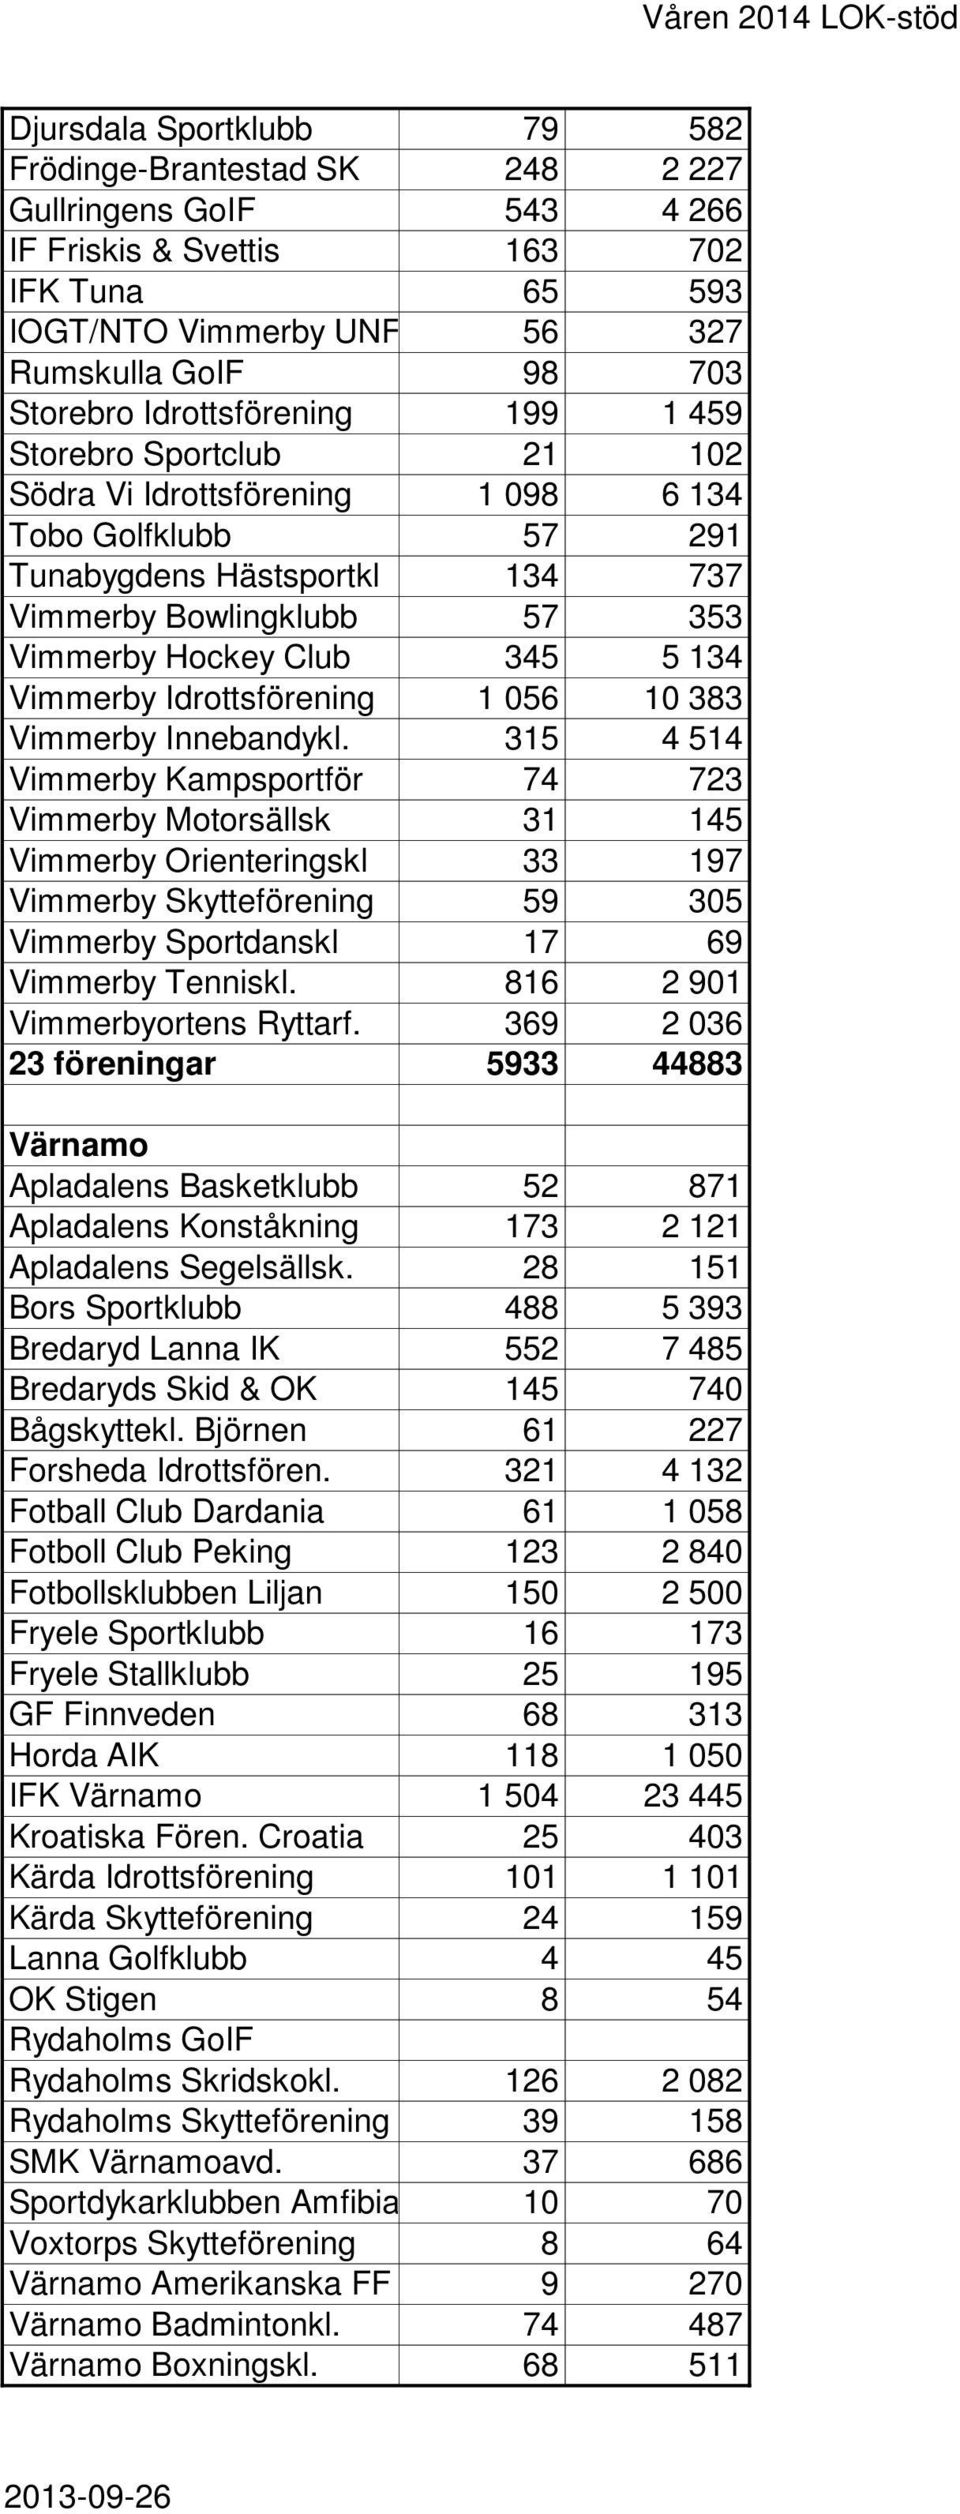 134 Vimmerby Idrottsförening 1 056 10 383 Vimmerby Innebandykl.